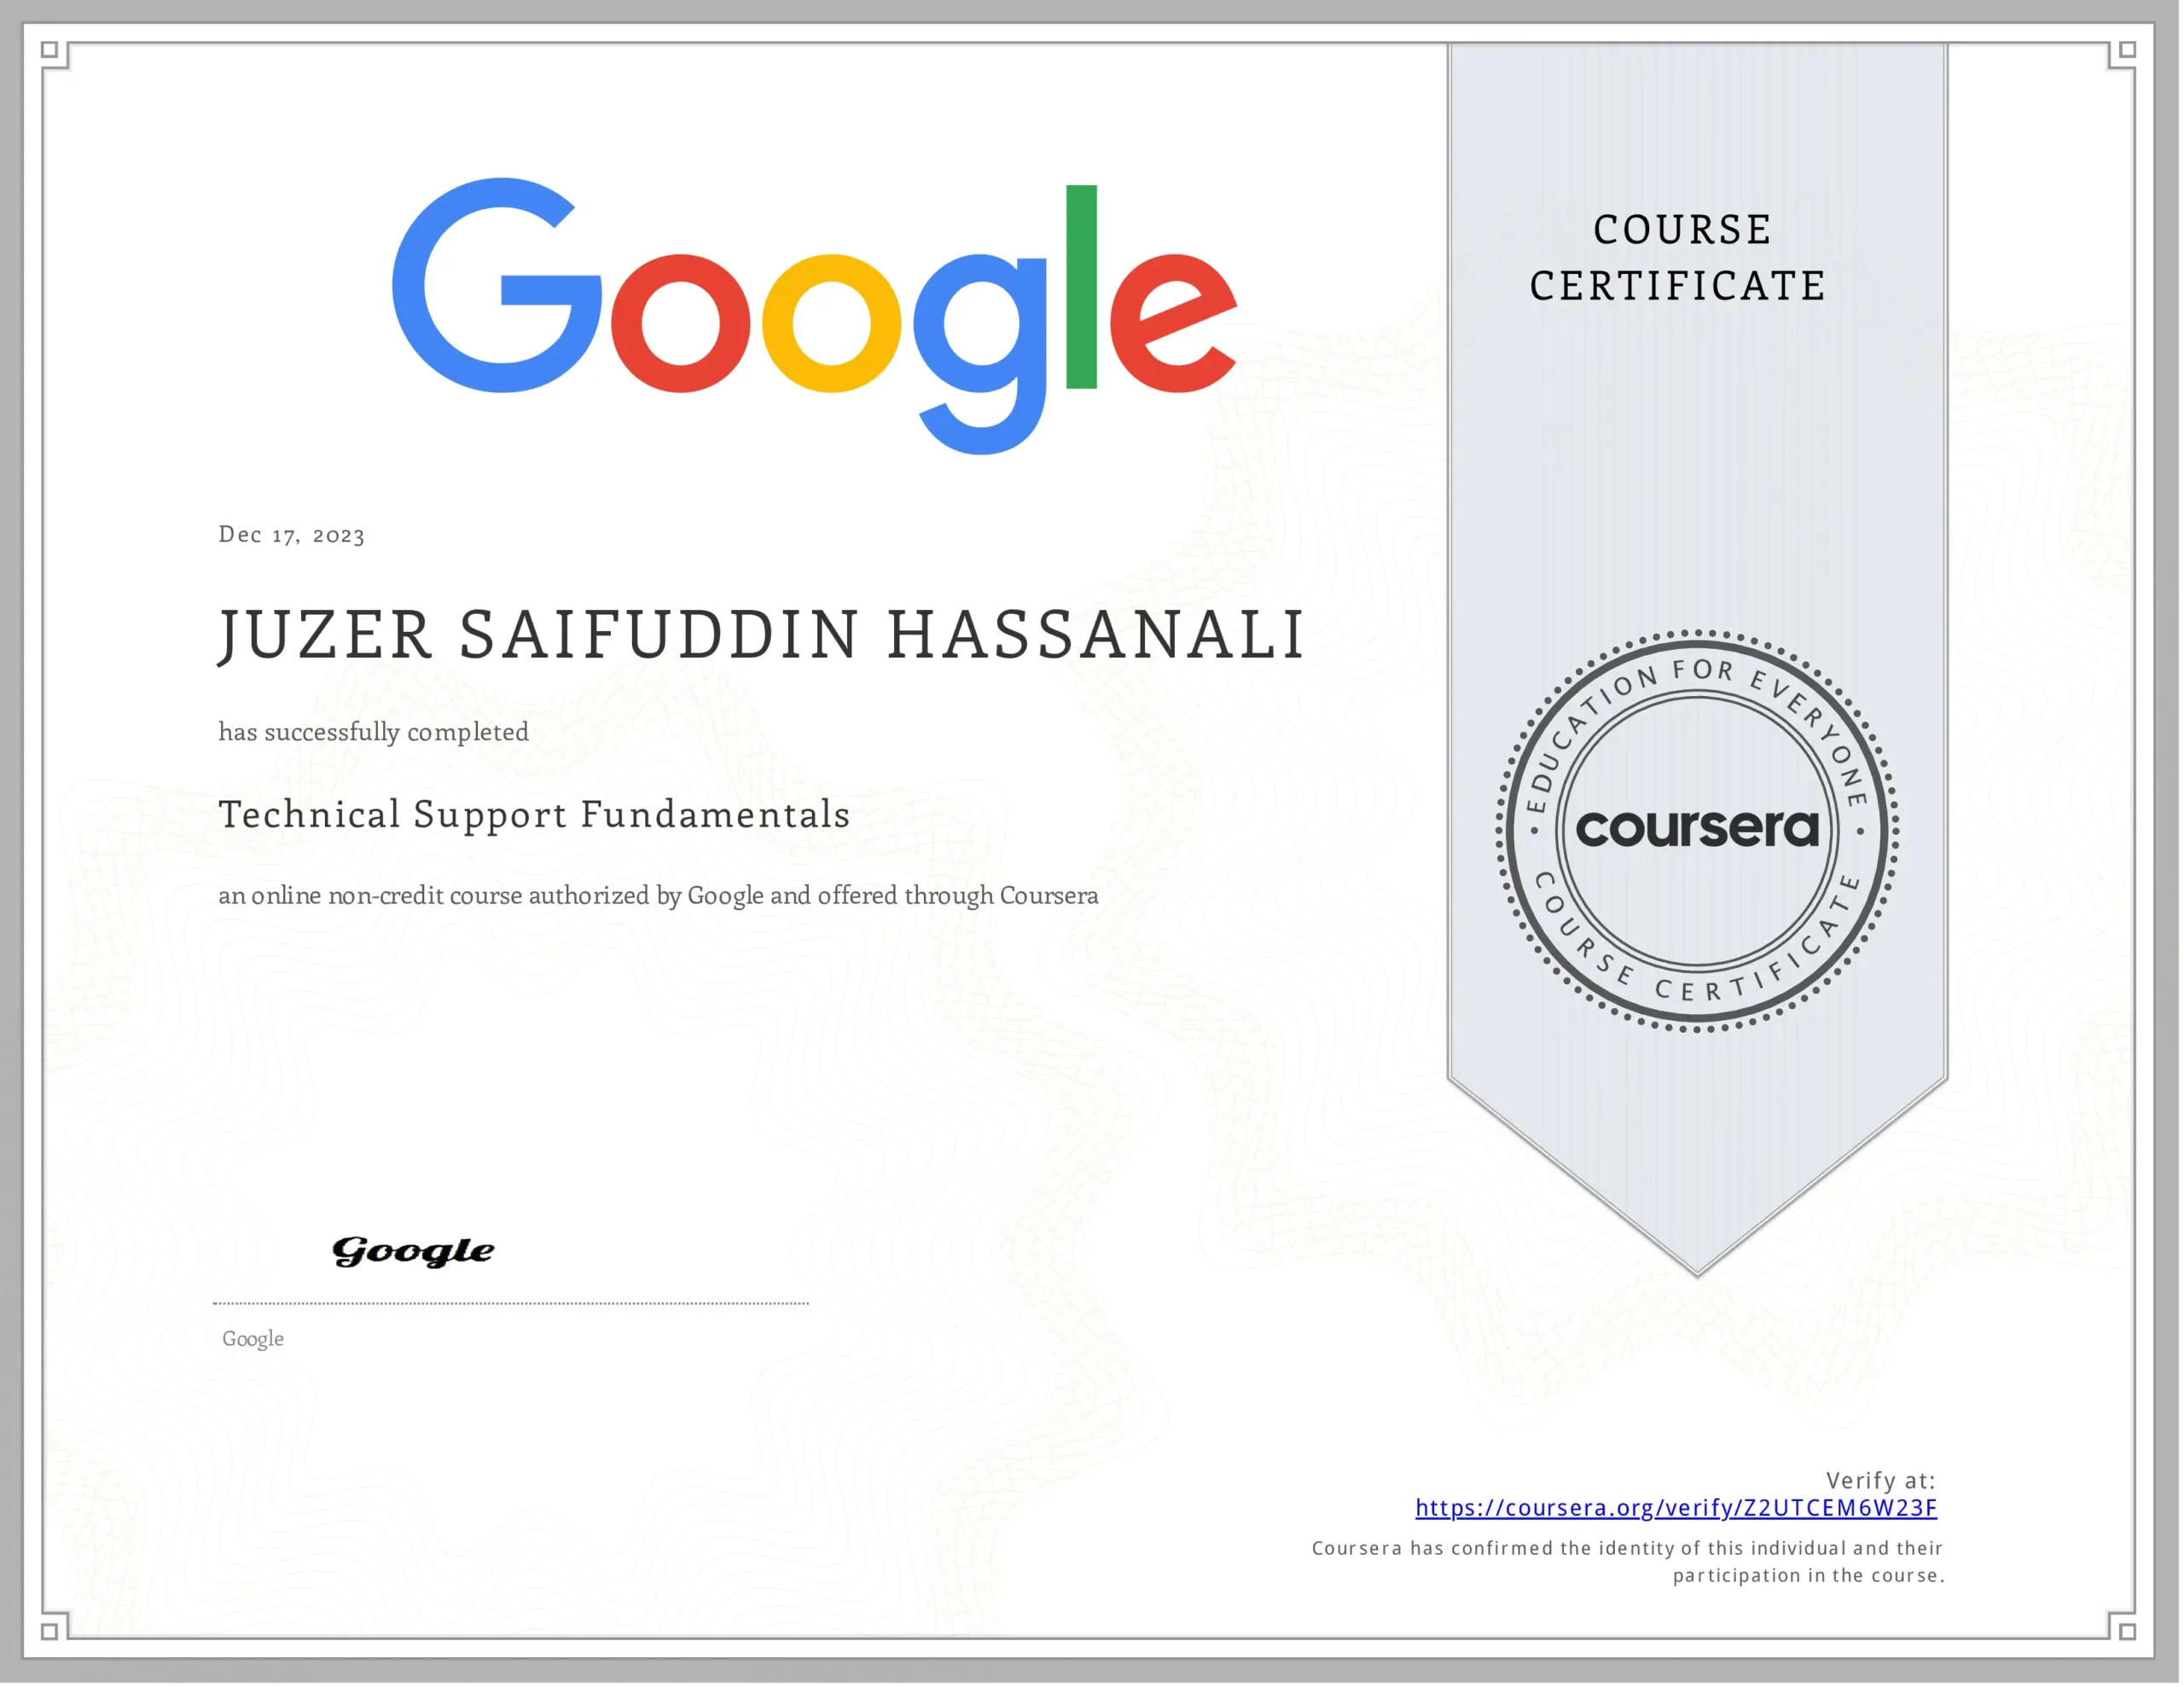 Google Tech Support Fundamentals Certificate